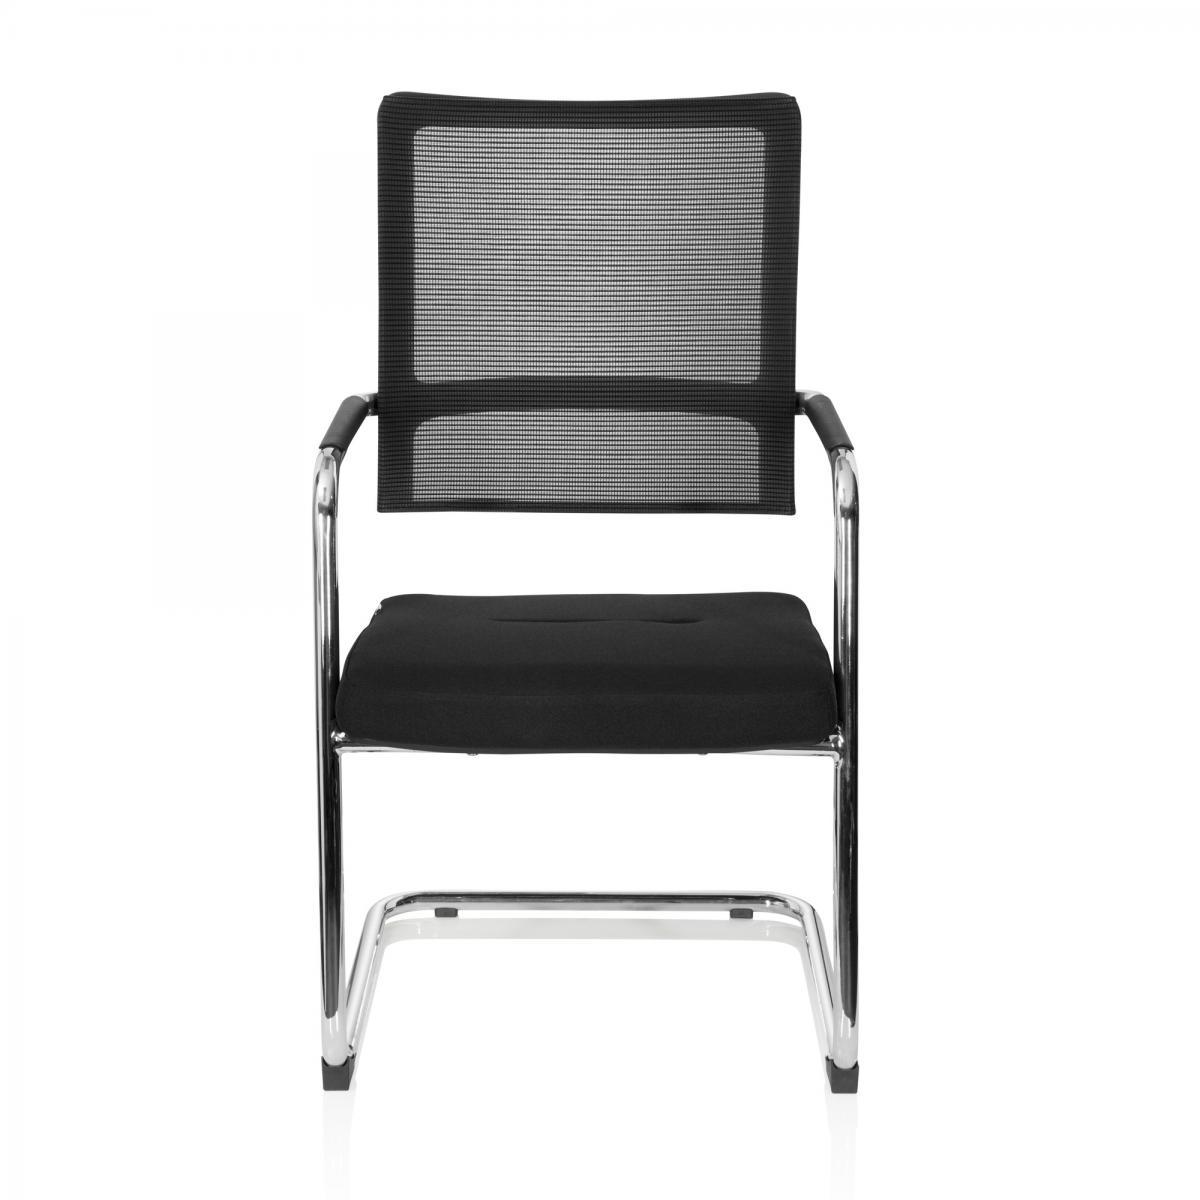 Hjh Office - Chaise de bureau / chaise pivotante VARO V maille noire hjh OFFICE - Chaises